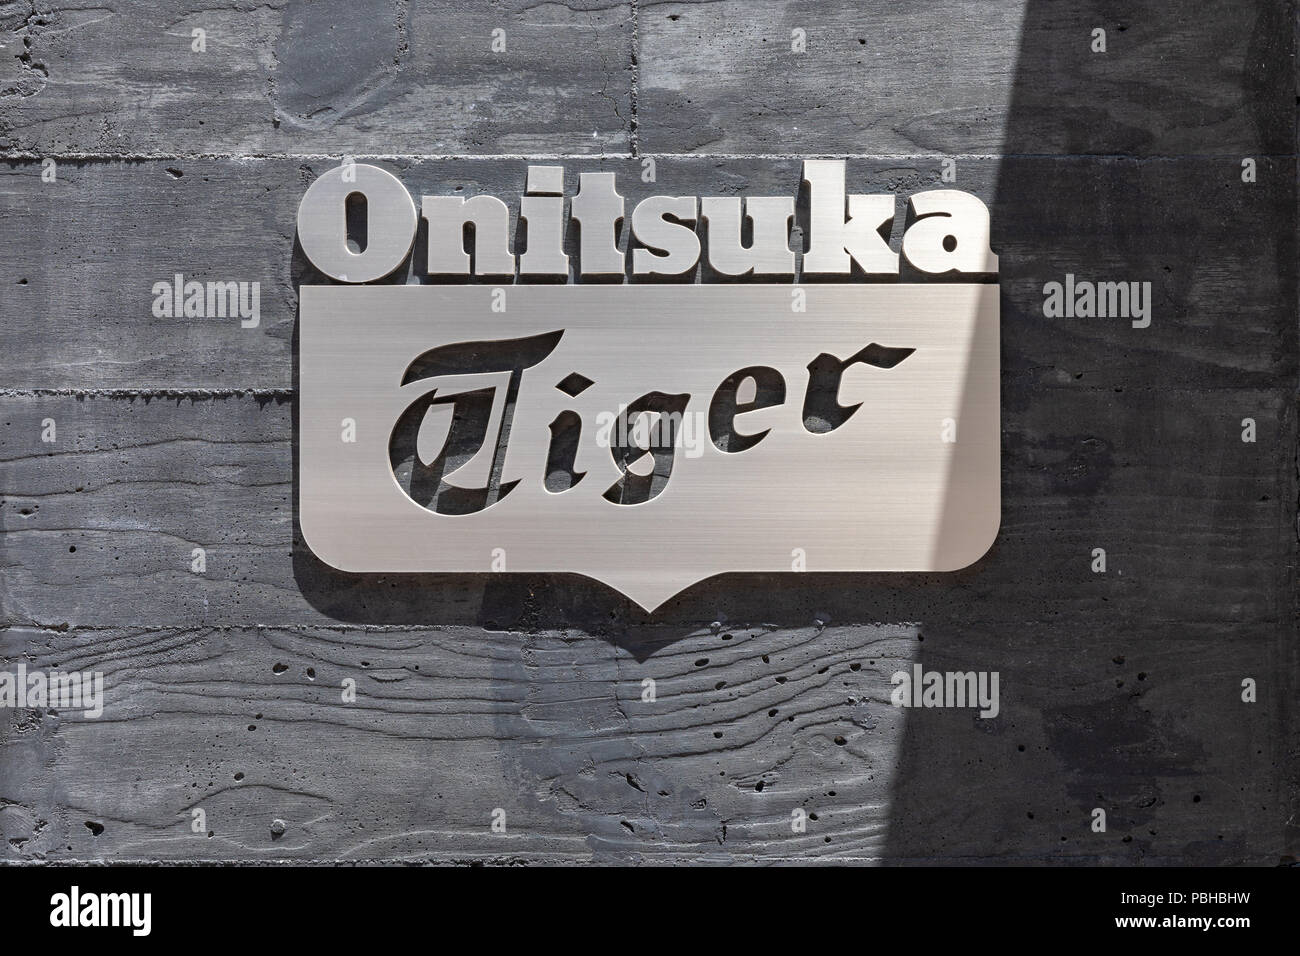 logo onitsuka